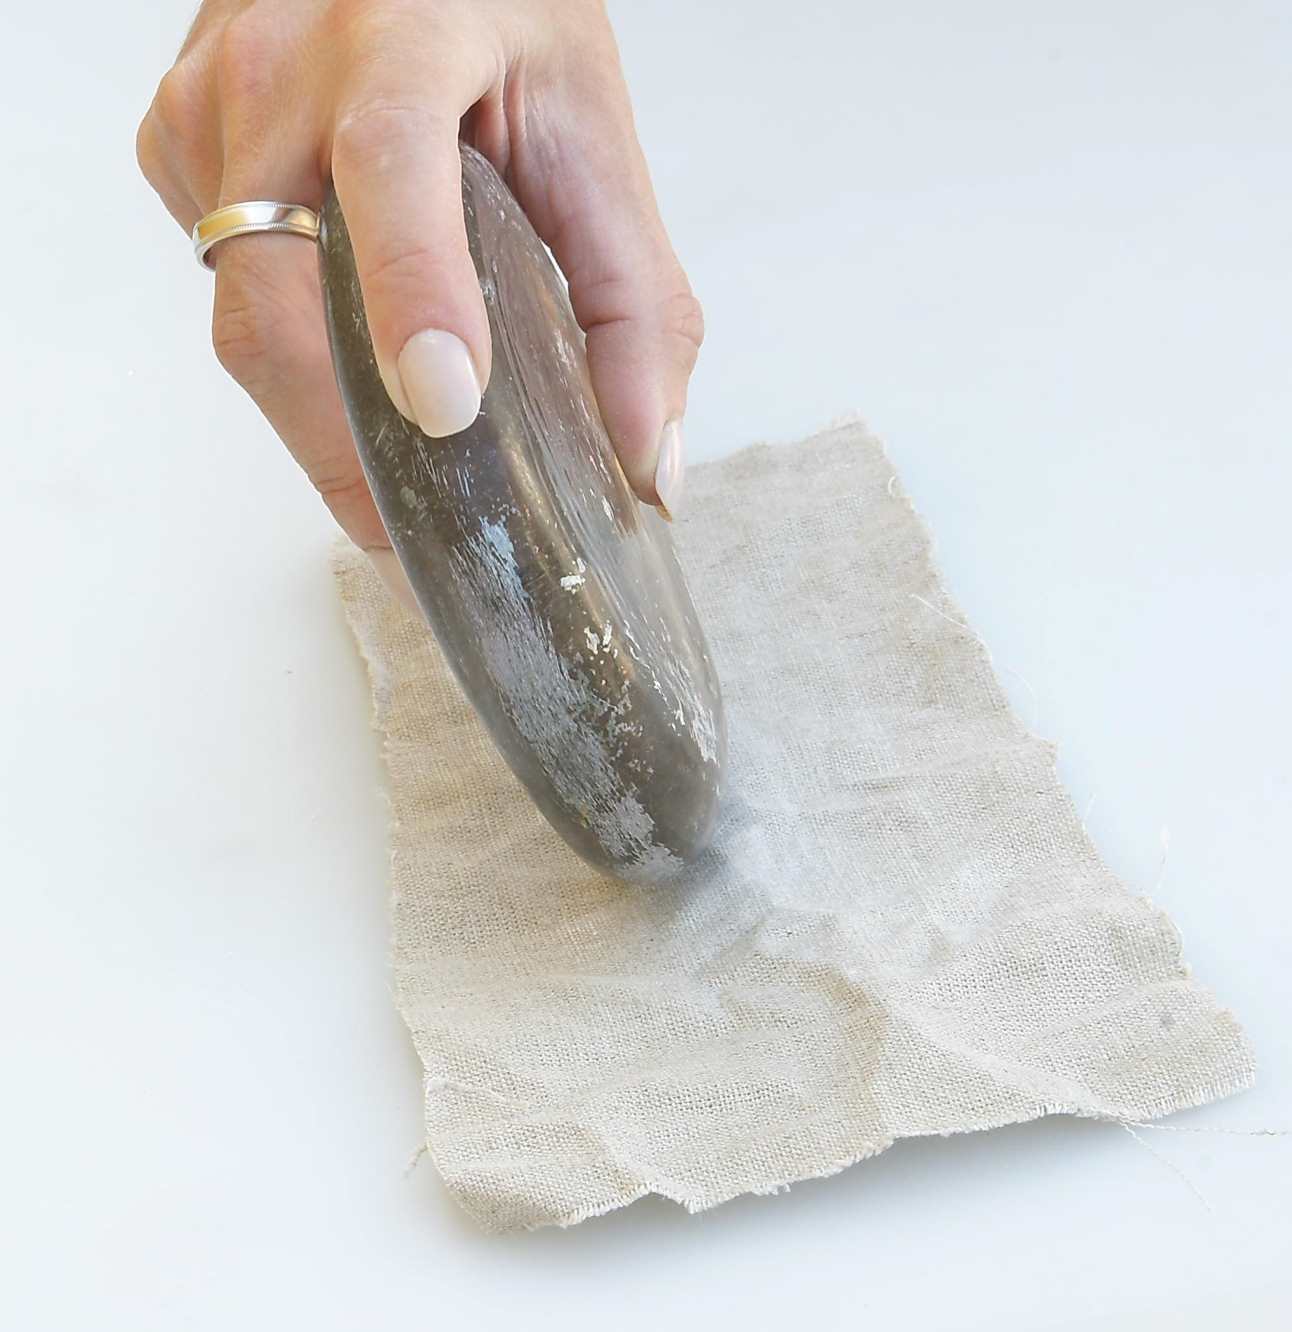 Szklany, okrągły przedmiot w kobiecej dłoni to jeden z egzemplarzy zagadki archeologicznej. Na zdjęciu użyty do prasowania kawałka lnu. Białe tło.